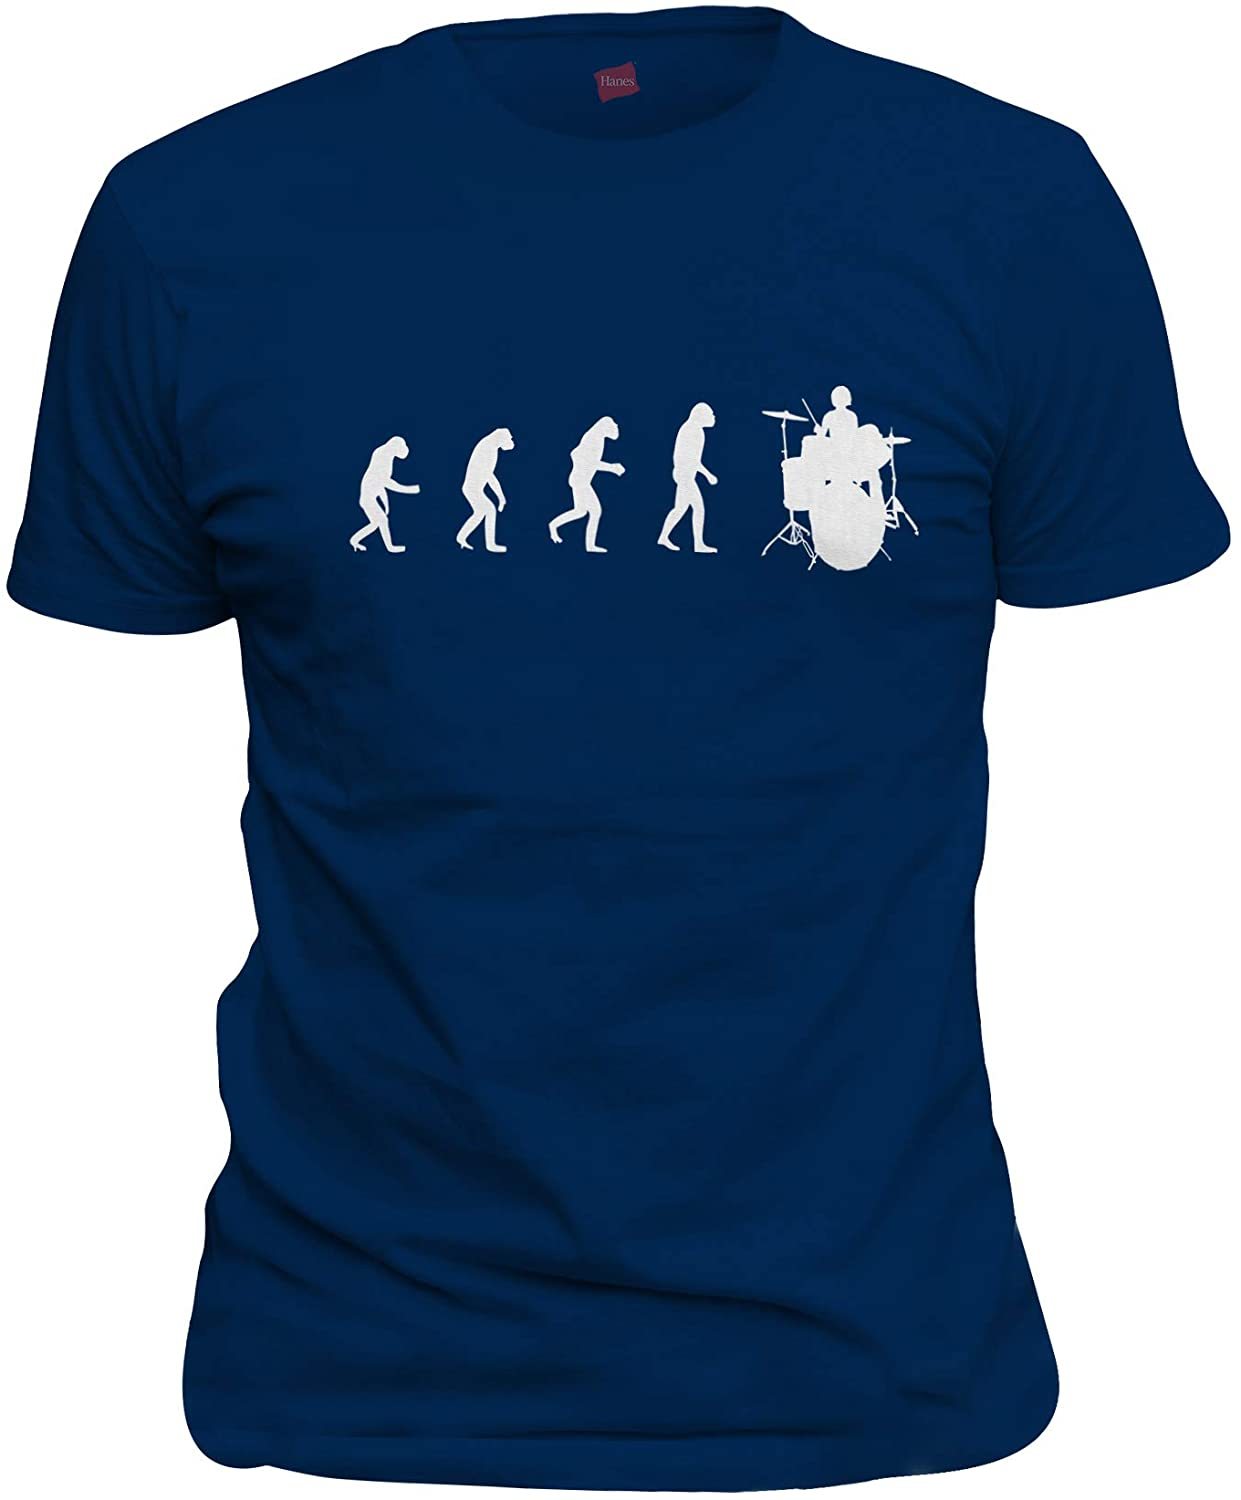 NXY Camiseta de evolución de hombre a baterista para hombre